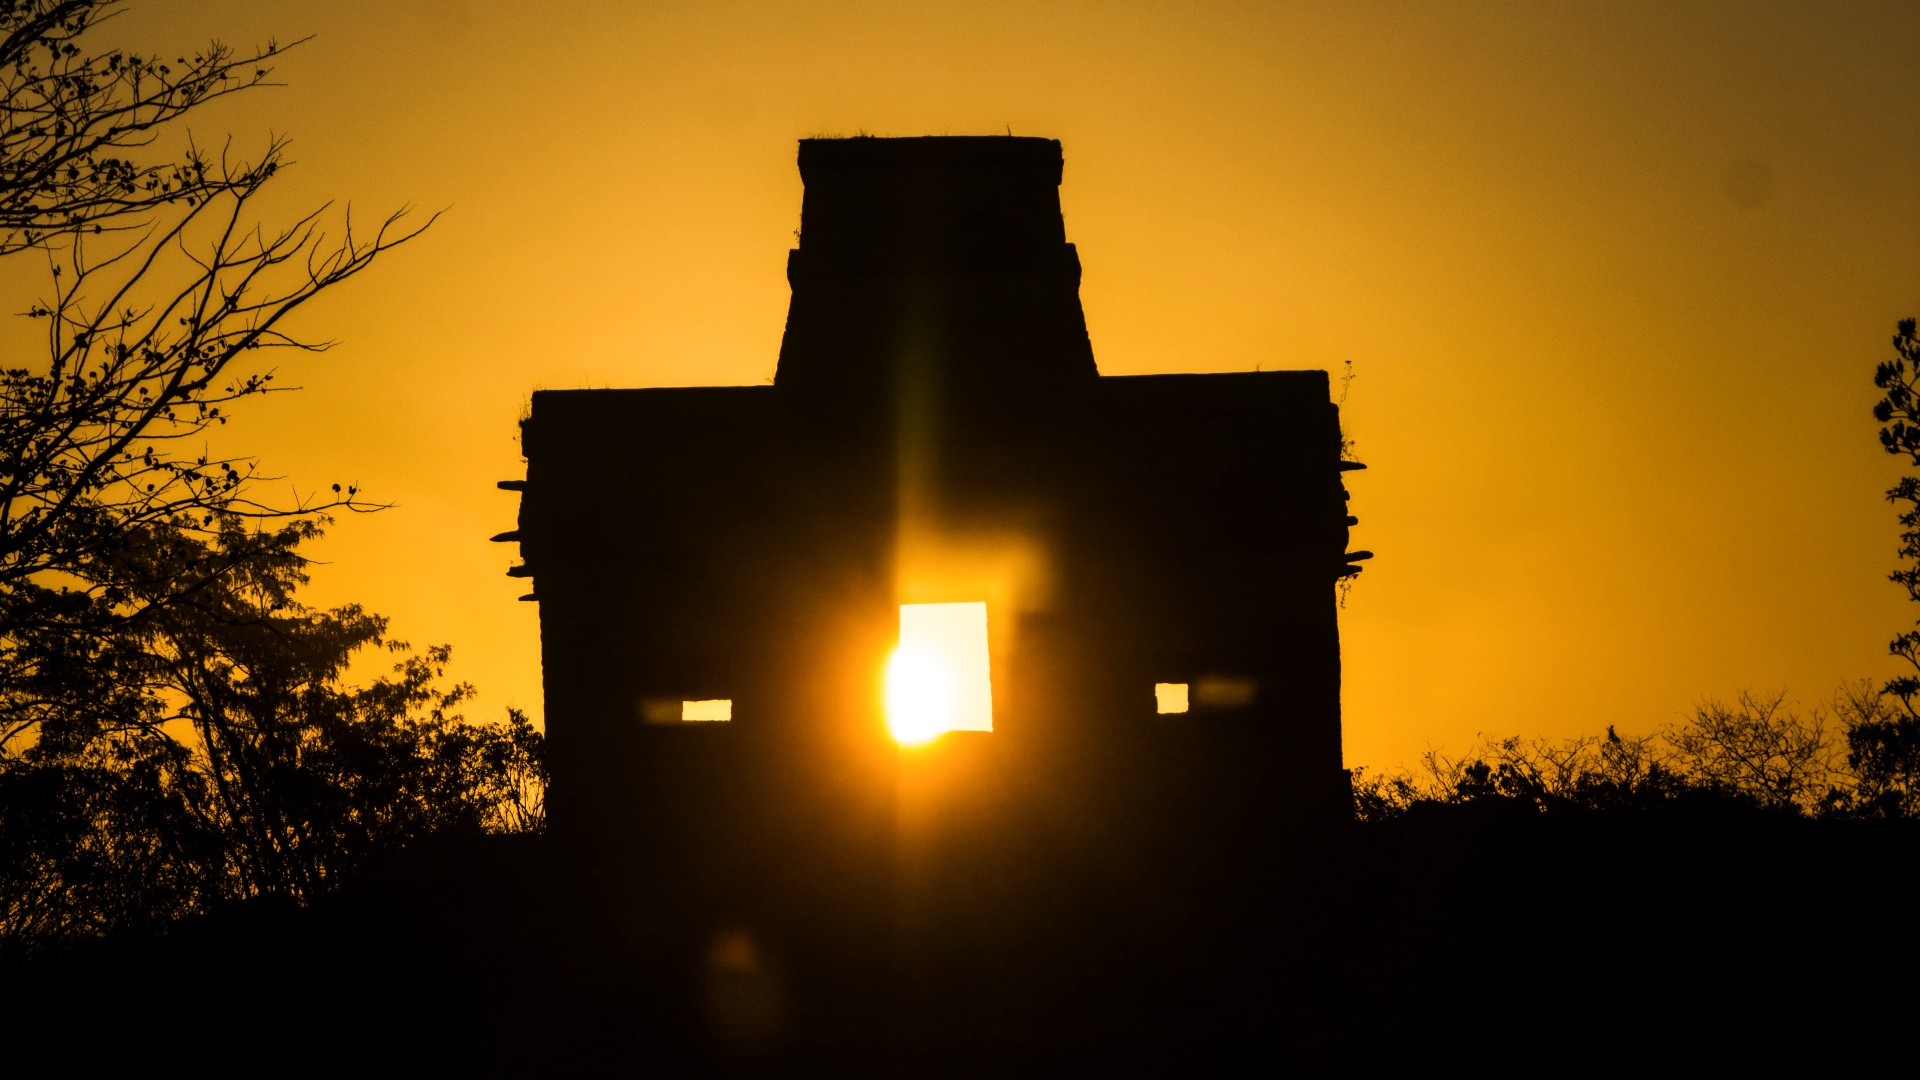  Sitio arqueológico de Dzibilchaltun ubicado a 20 km de Mérida. En el lugar se puede observar un fenómeno solar en donde el dios maya del sol se "asoma" por las puertas del templo en primavera y otoño. 
(Foto: Cuartoscuro)